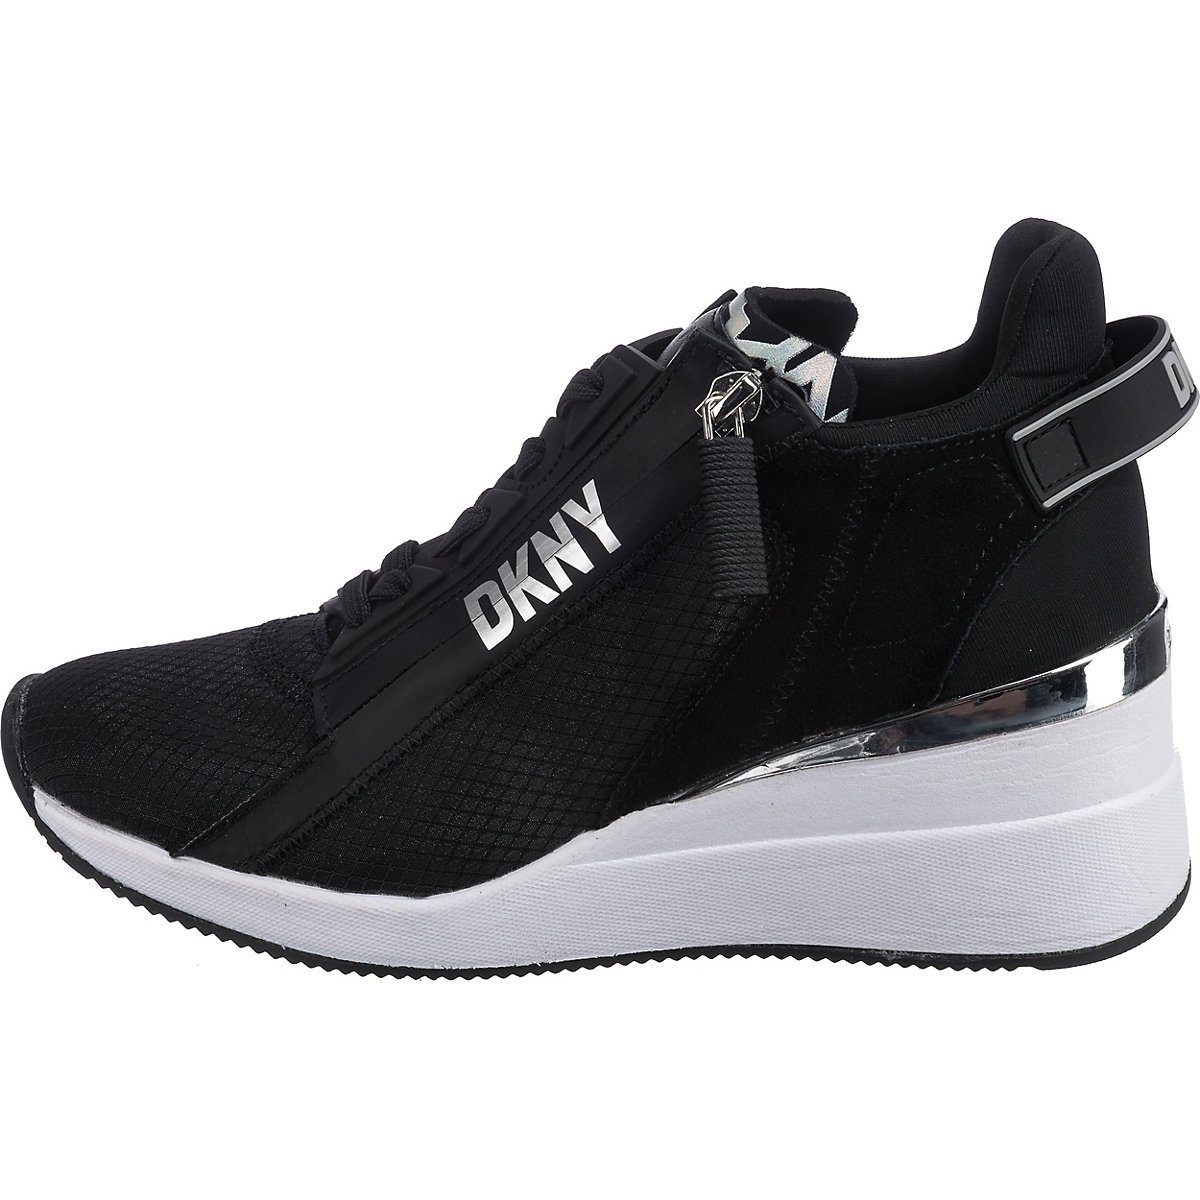 Schuhe Sneaker DKNY Pali Wedge-Sneakers Wedgesneaker